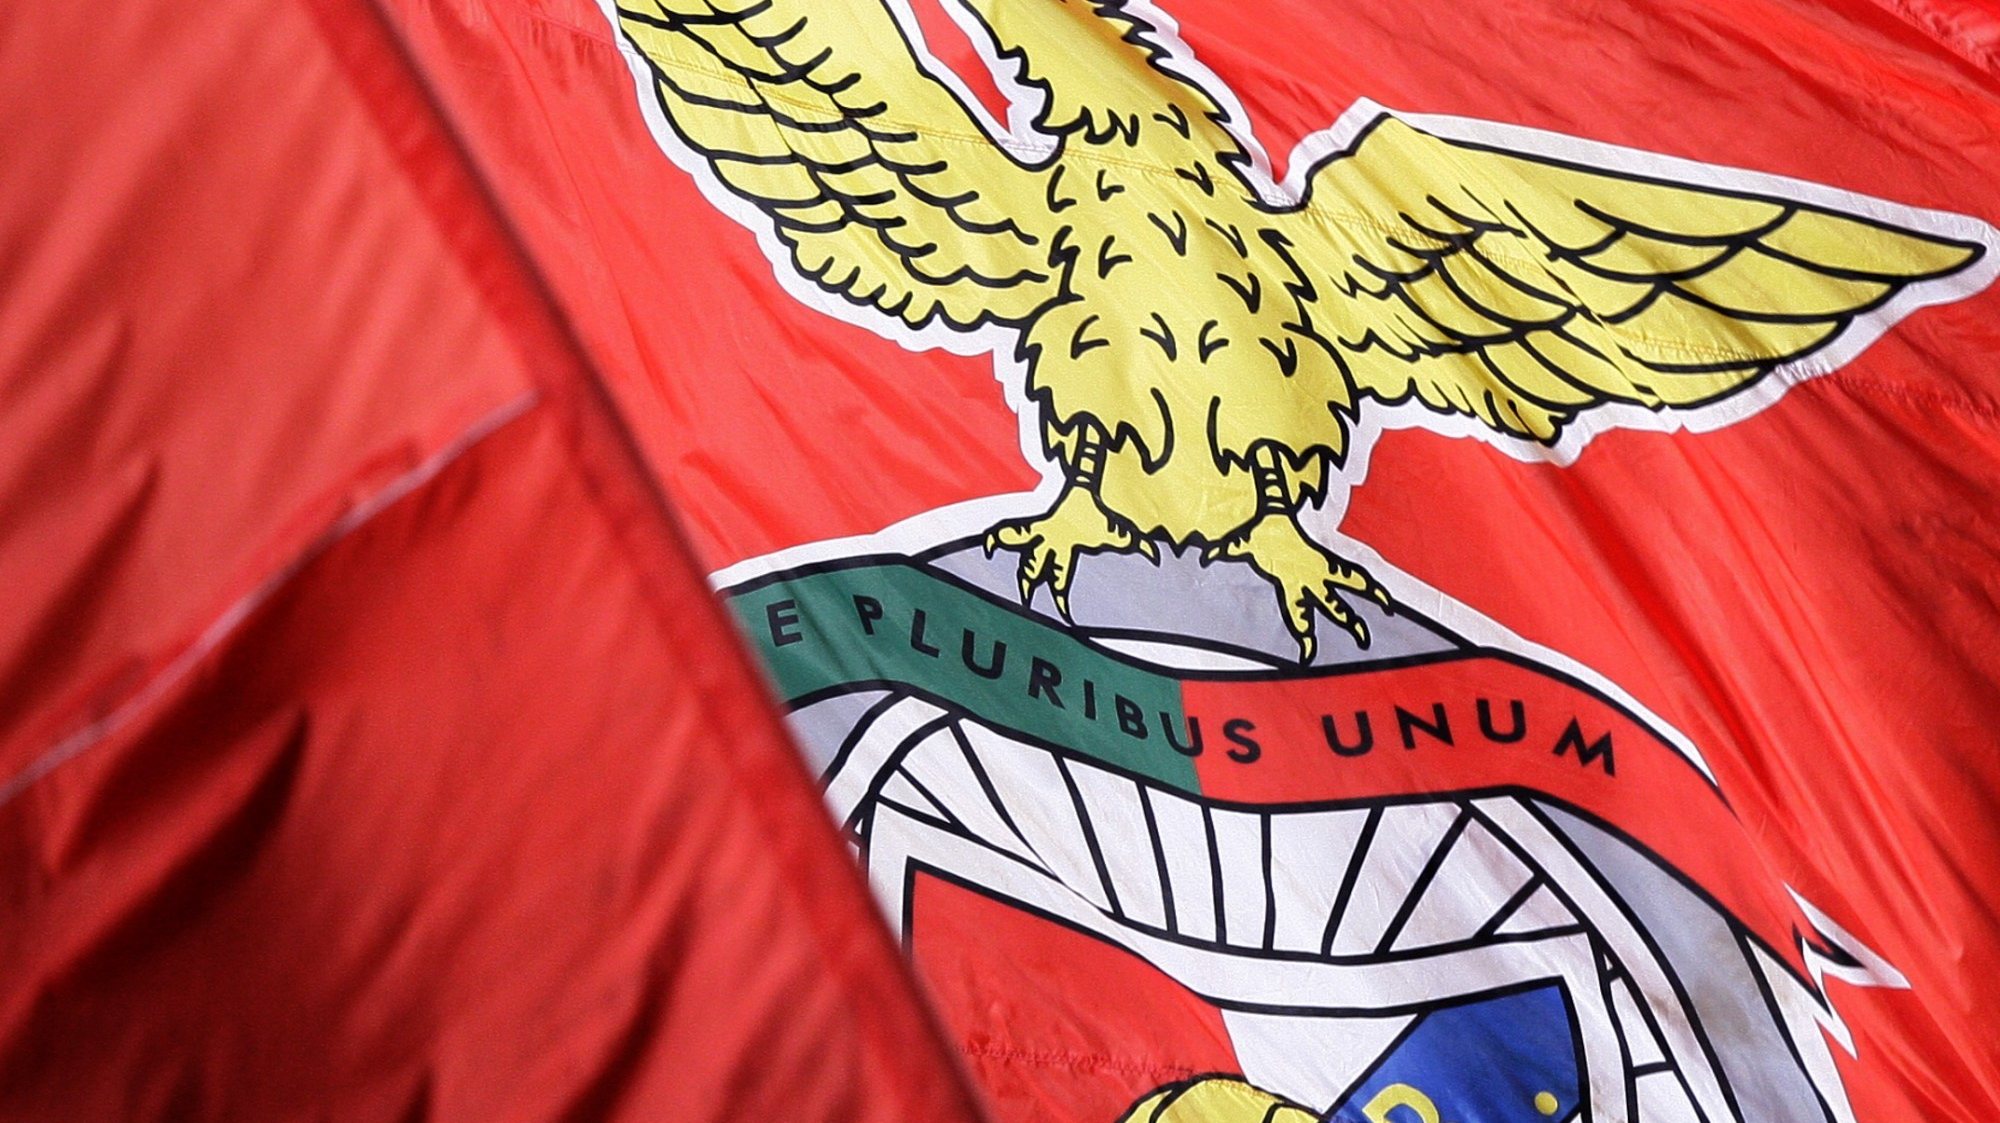 Desporto: Bandeira do Benfica